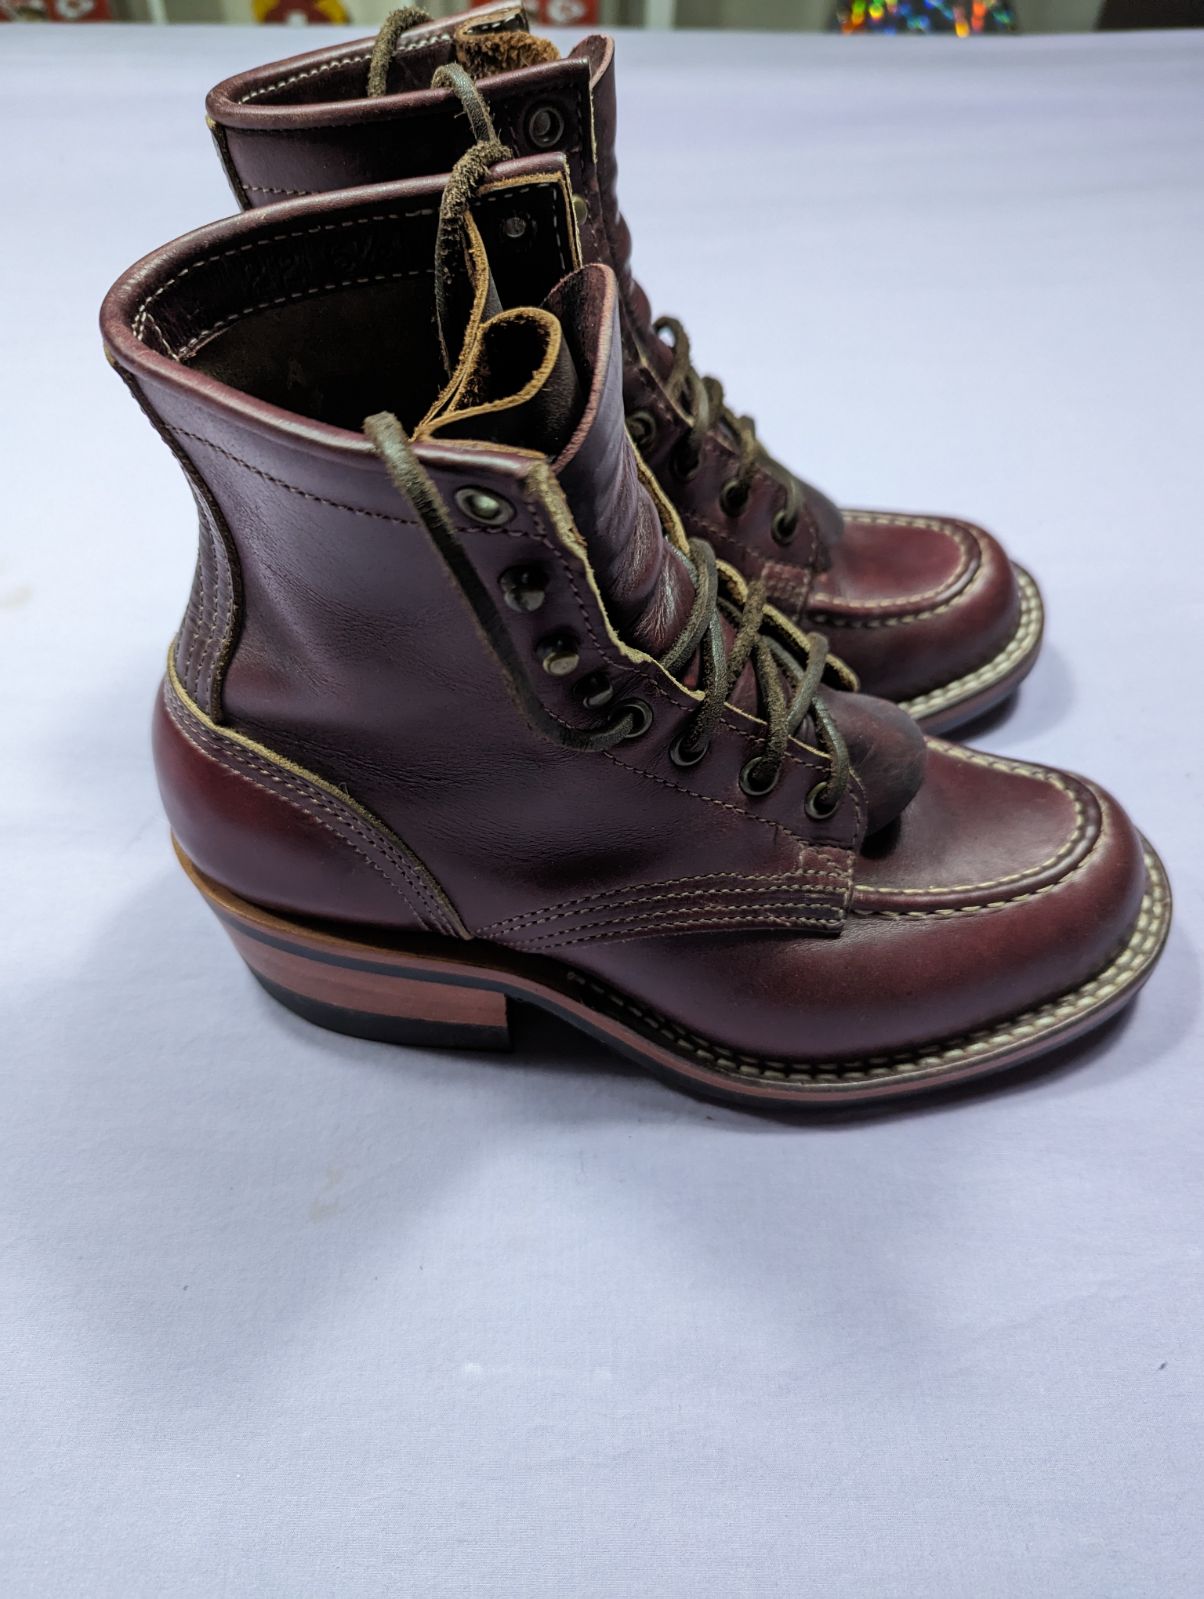 Nick's Moc Toe Boots, 55 last, color 8 CXL, 6.5FF